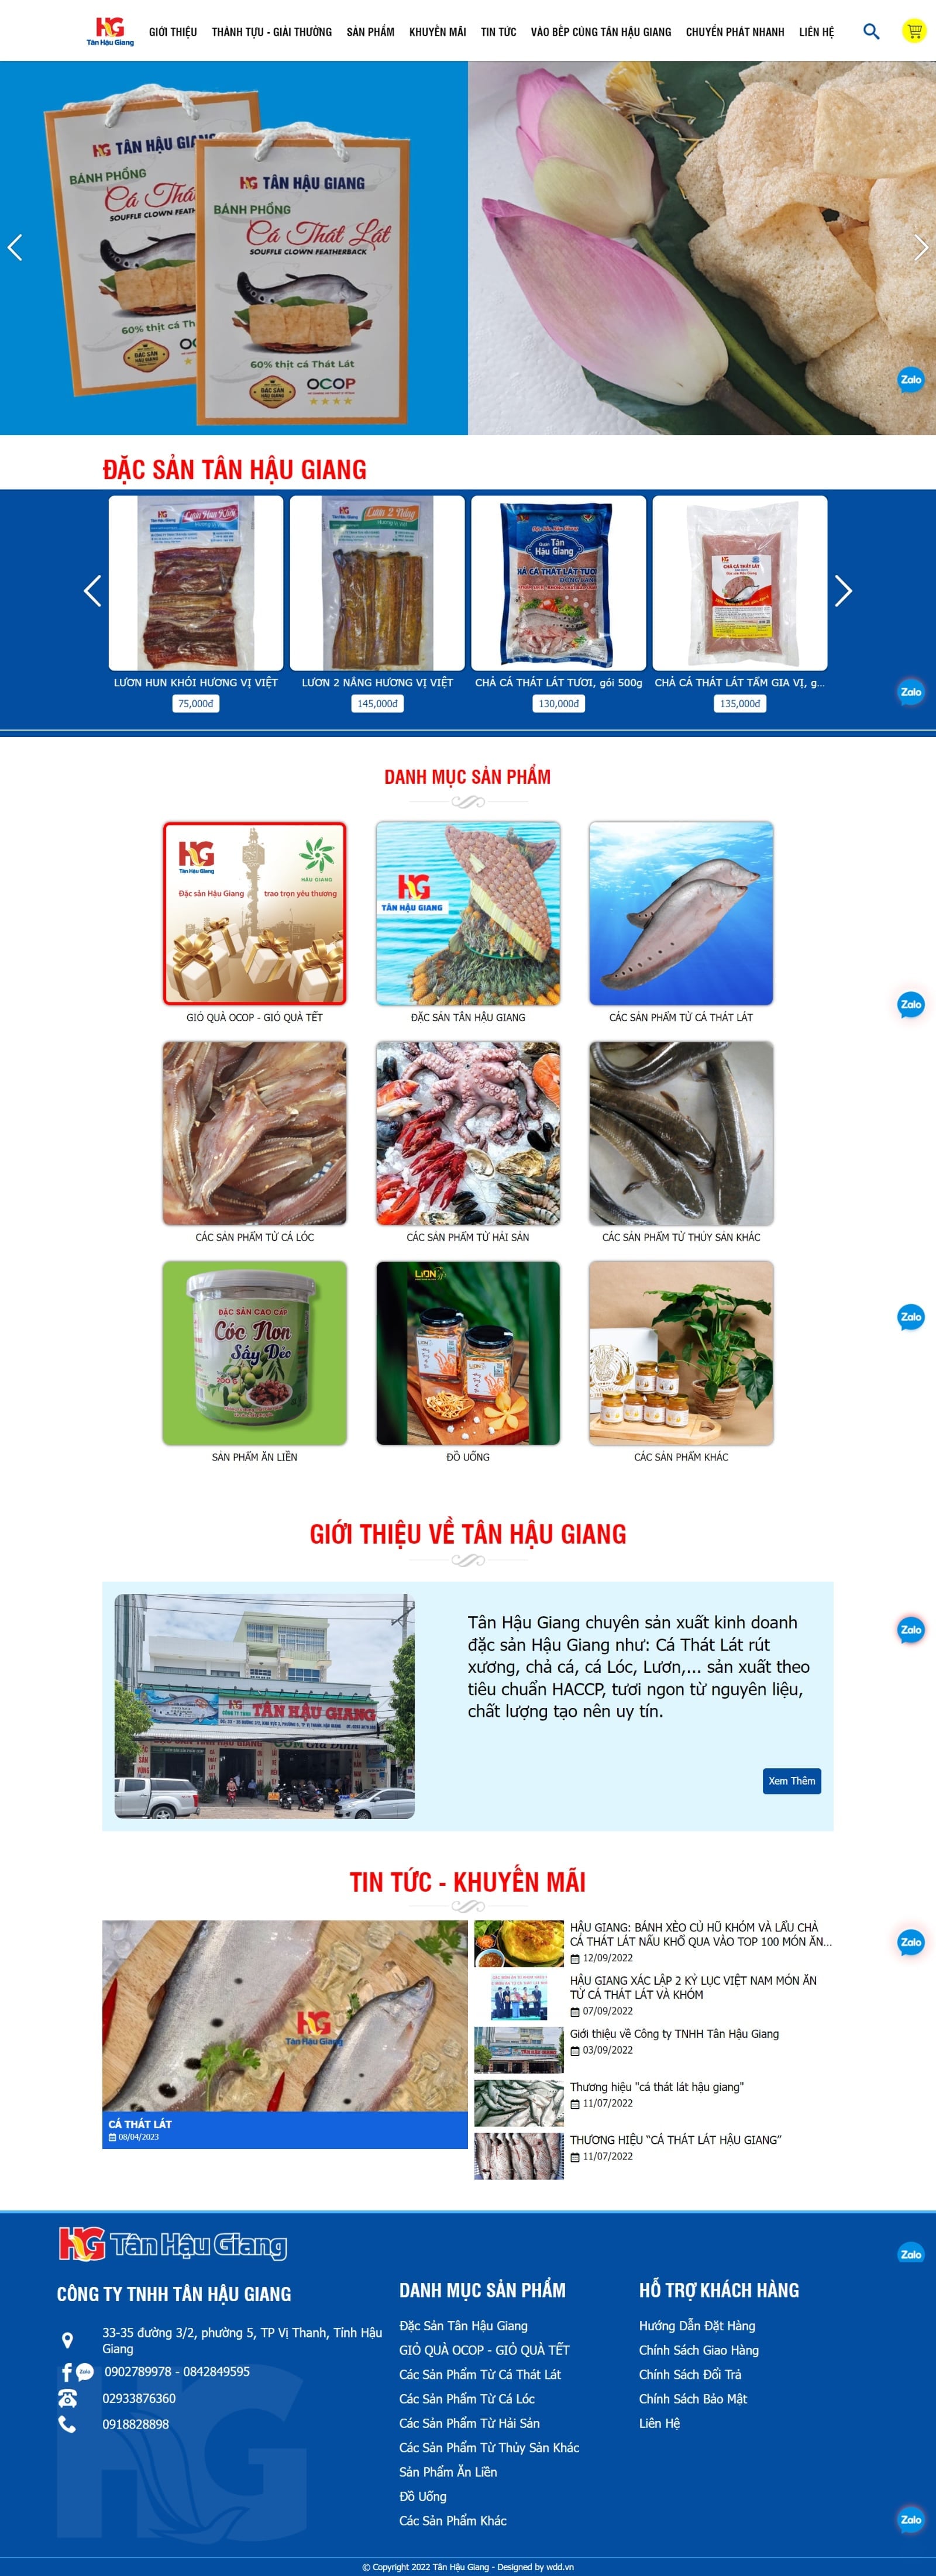 Thiết kế website bán hàng Tân Hậu Giang